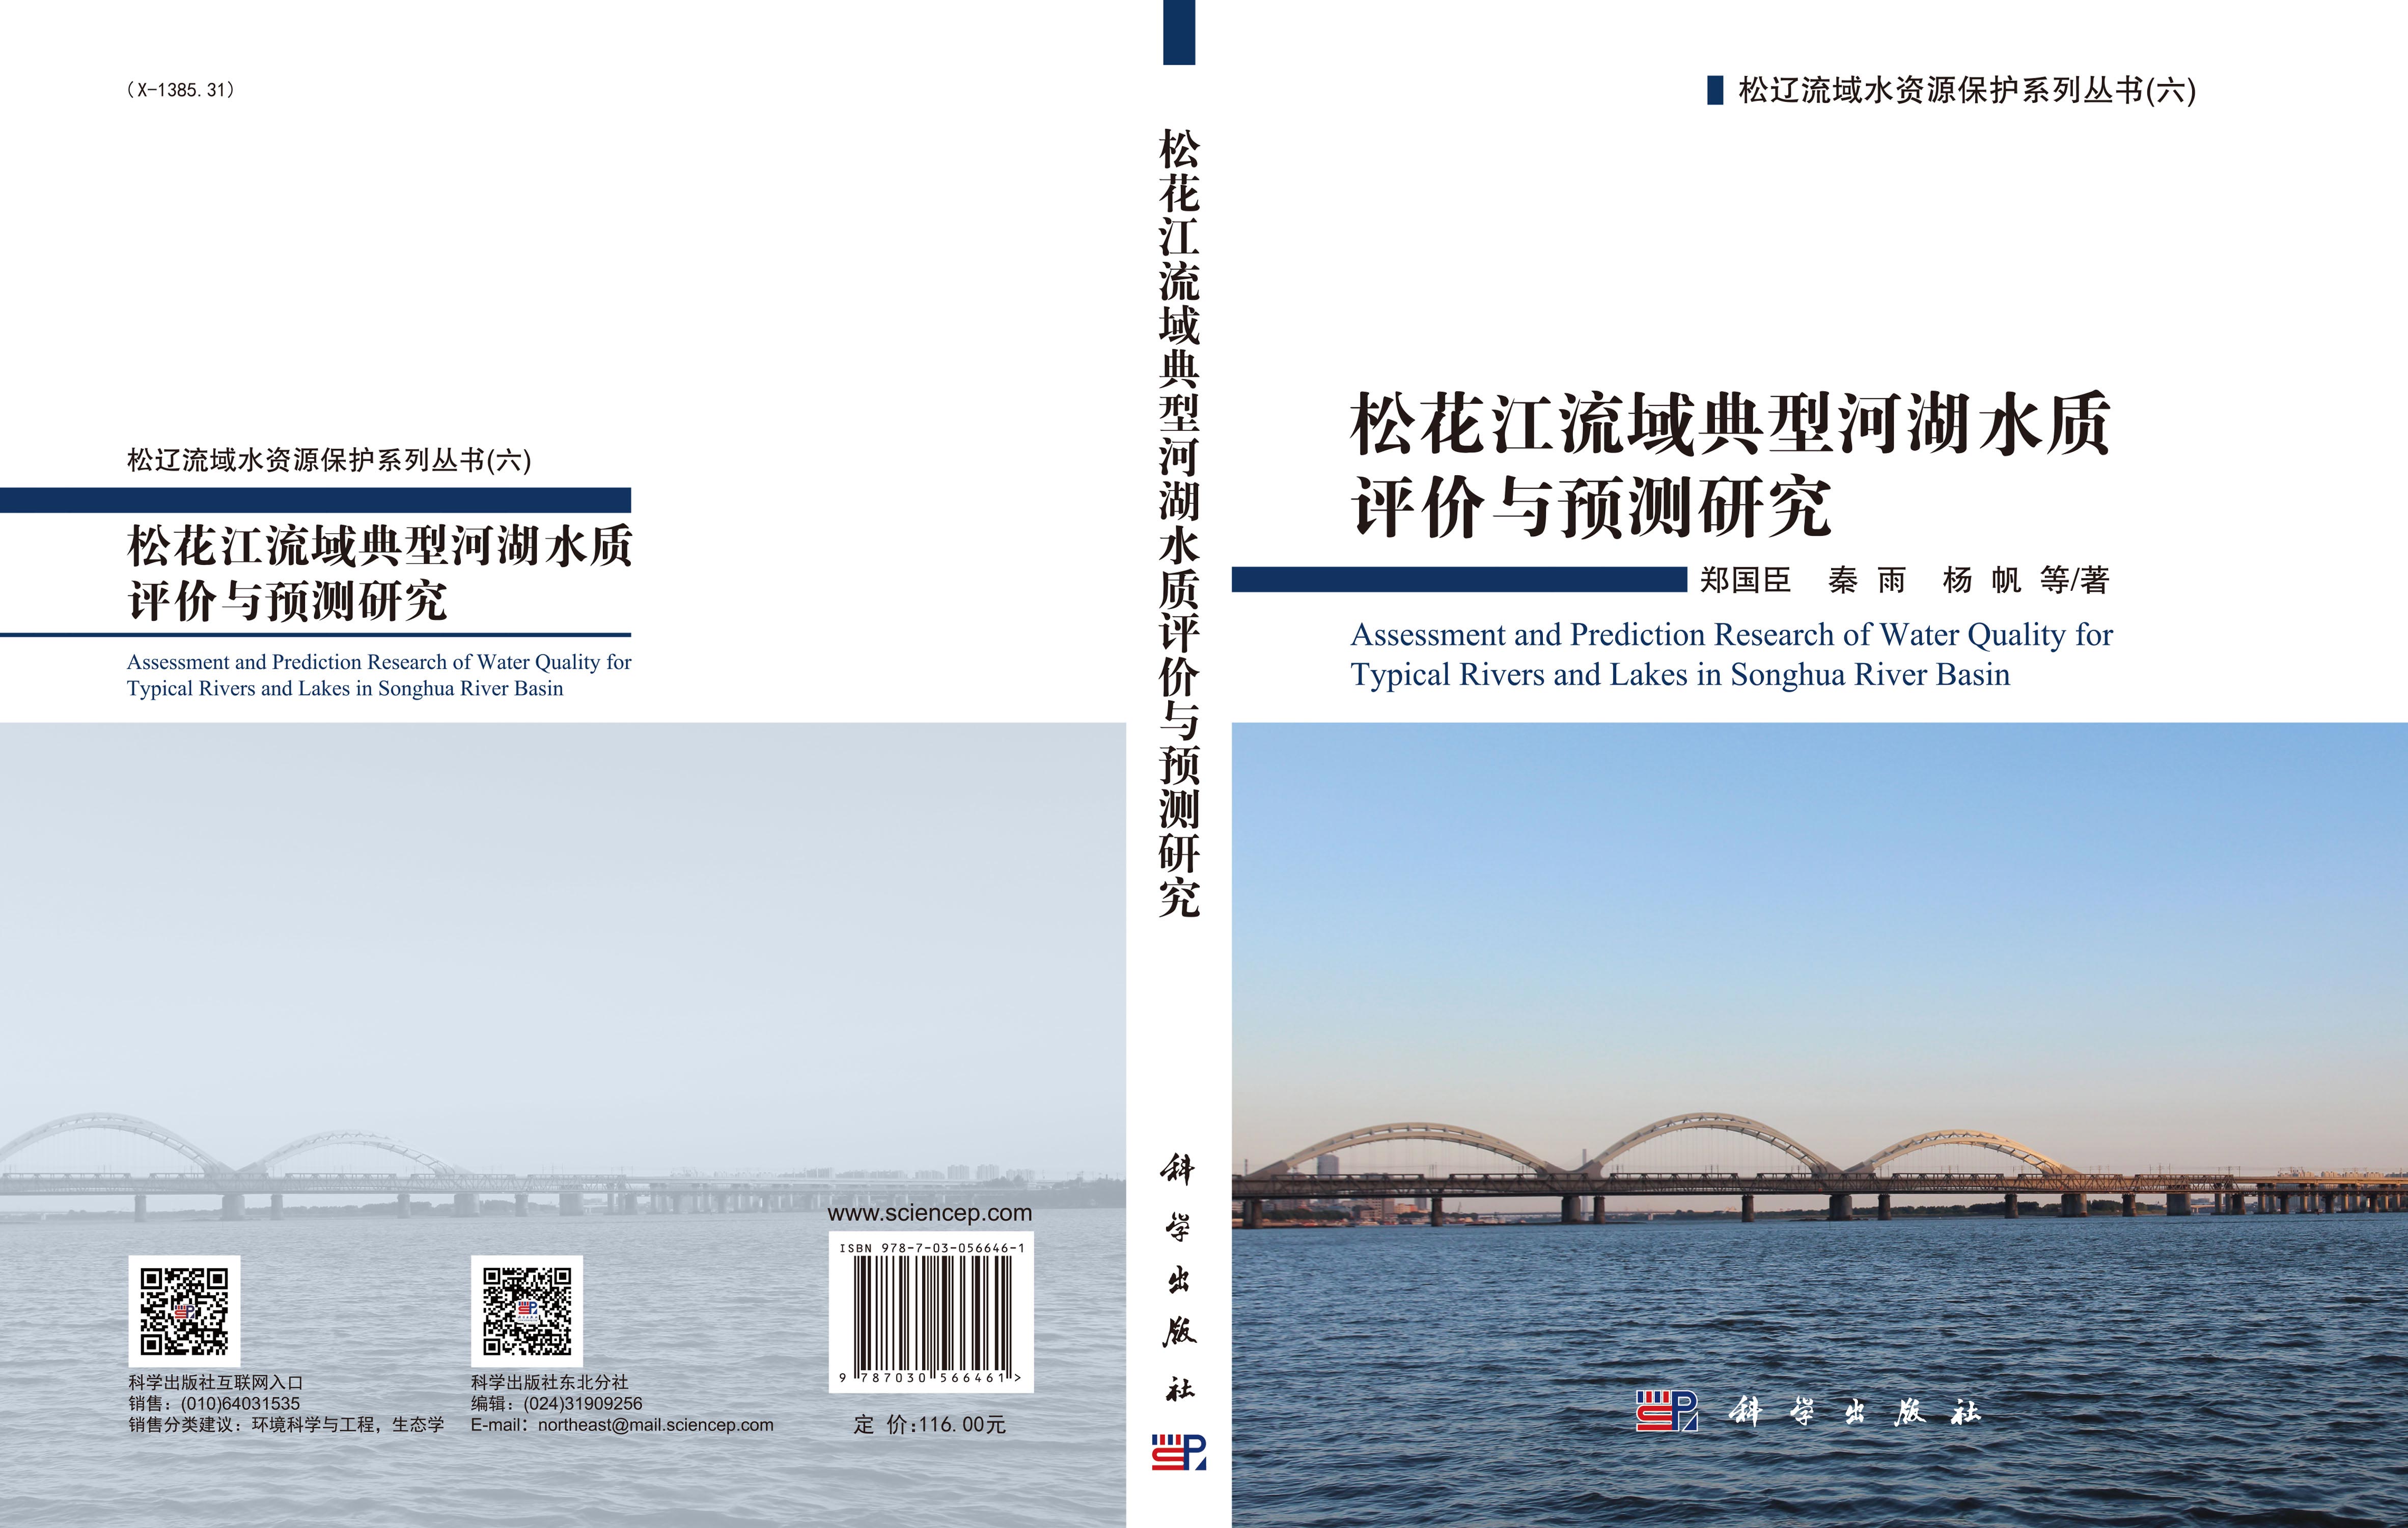 松花江流域典型河湖水质评价与预测研究